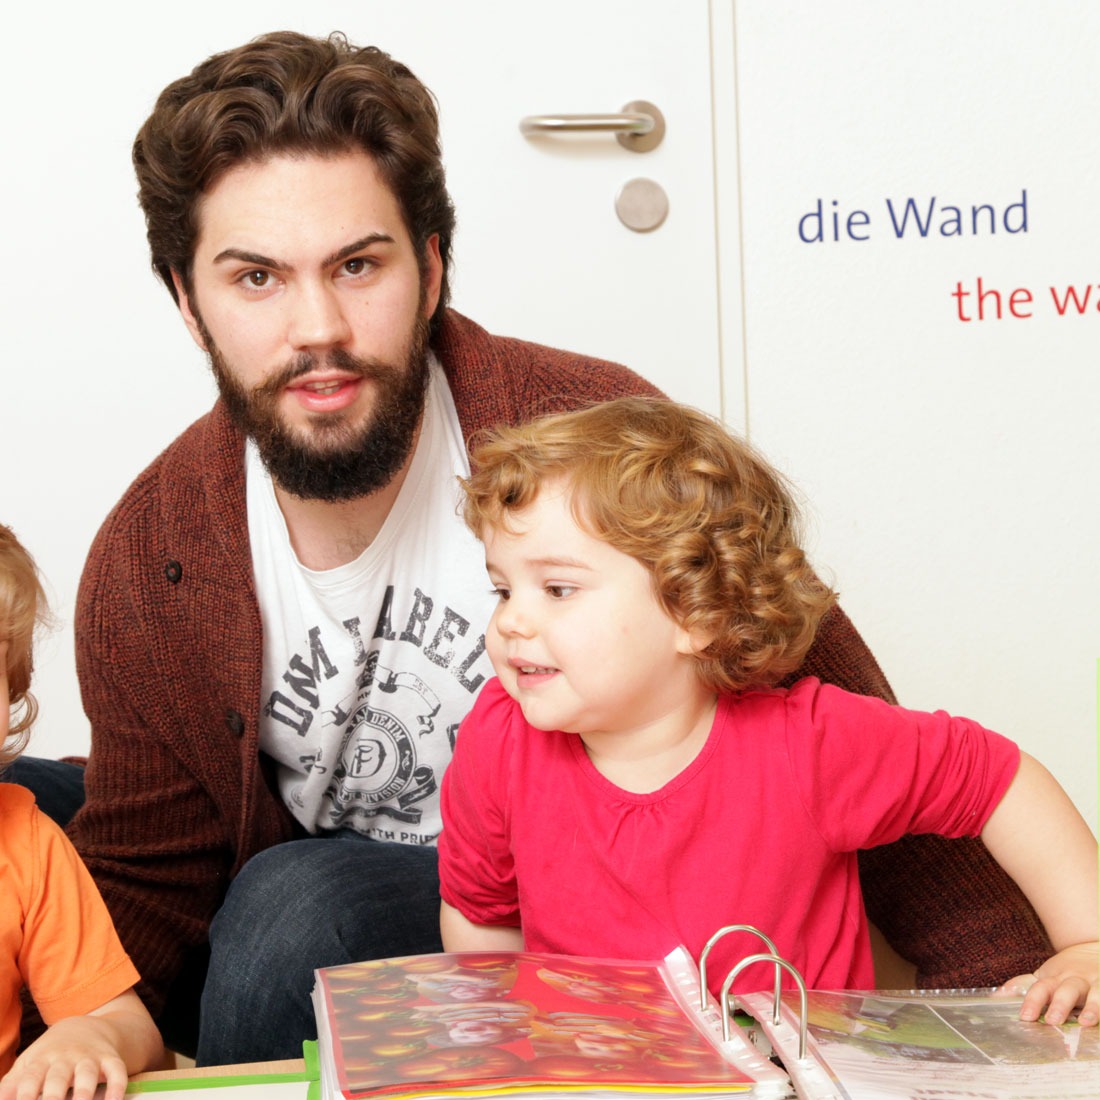 Bilder Kids & Co. Unterlindau - pme Familienservice